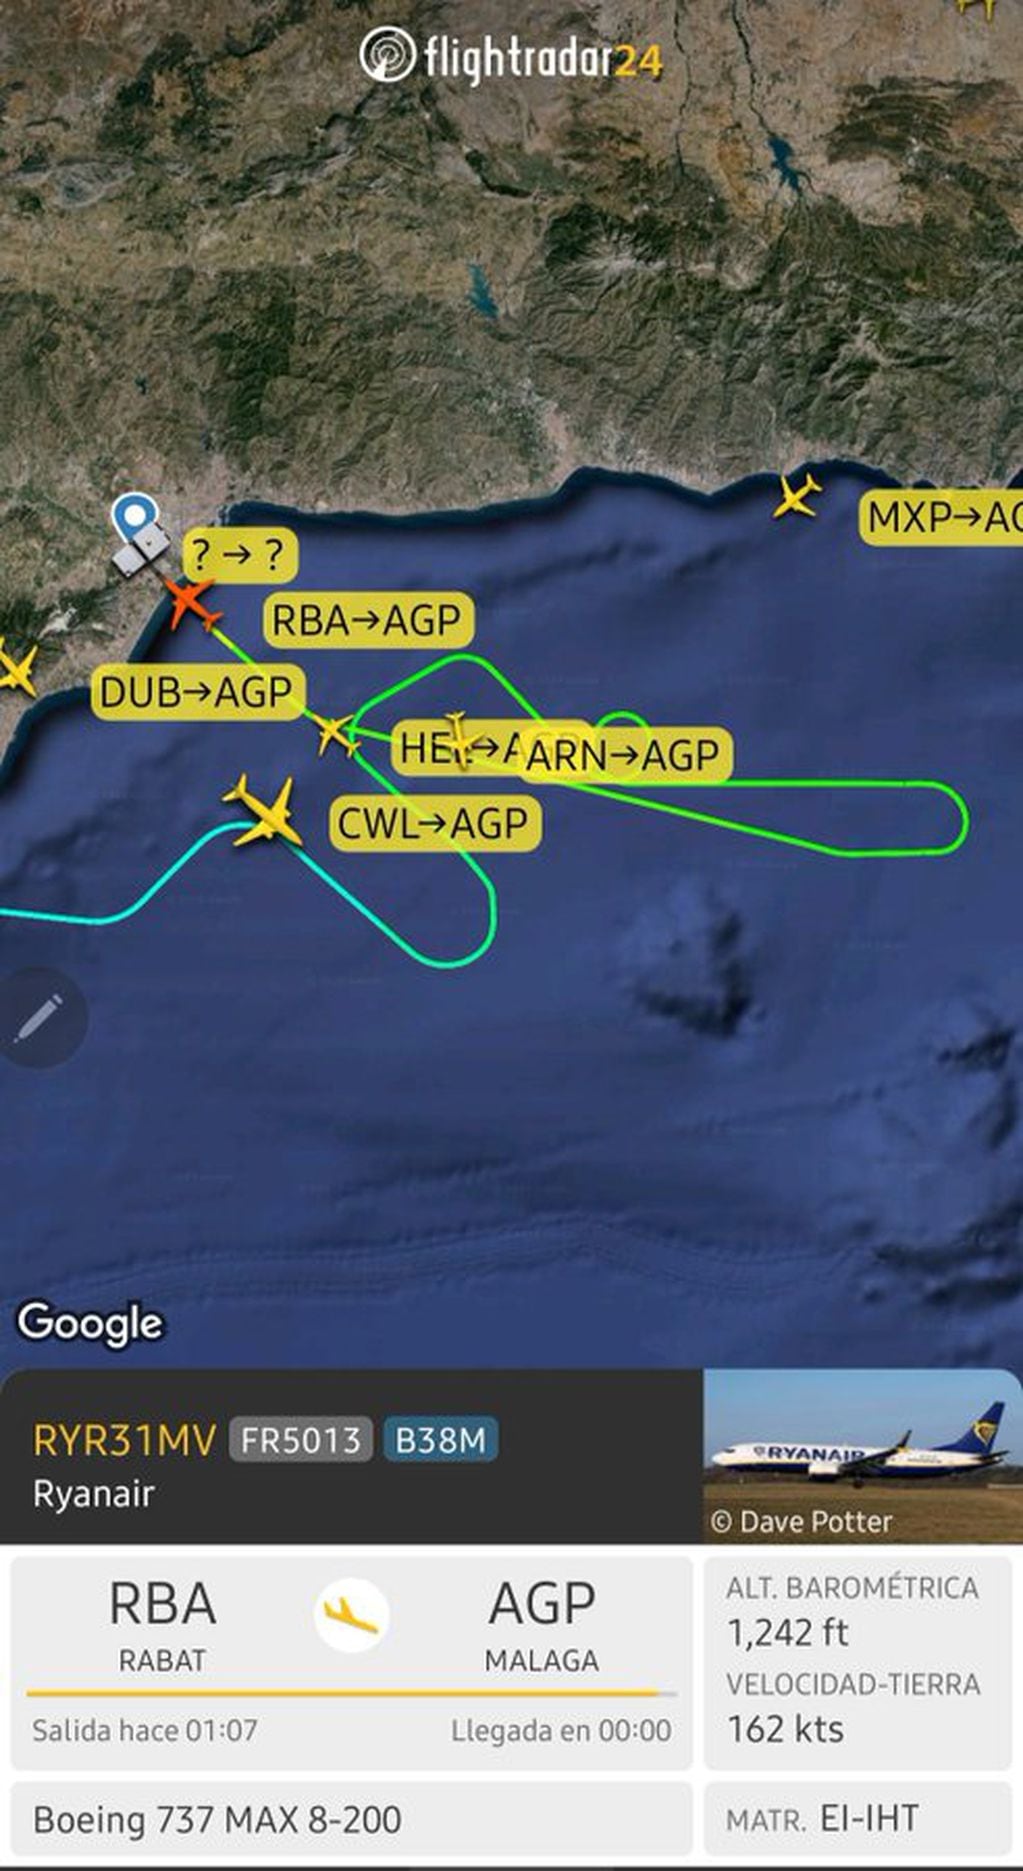 La tripulación del vuelo procedente de Rabat, solicitó interrumpción del vuelo. Gentileza: X @controladores.